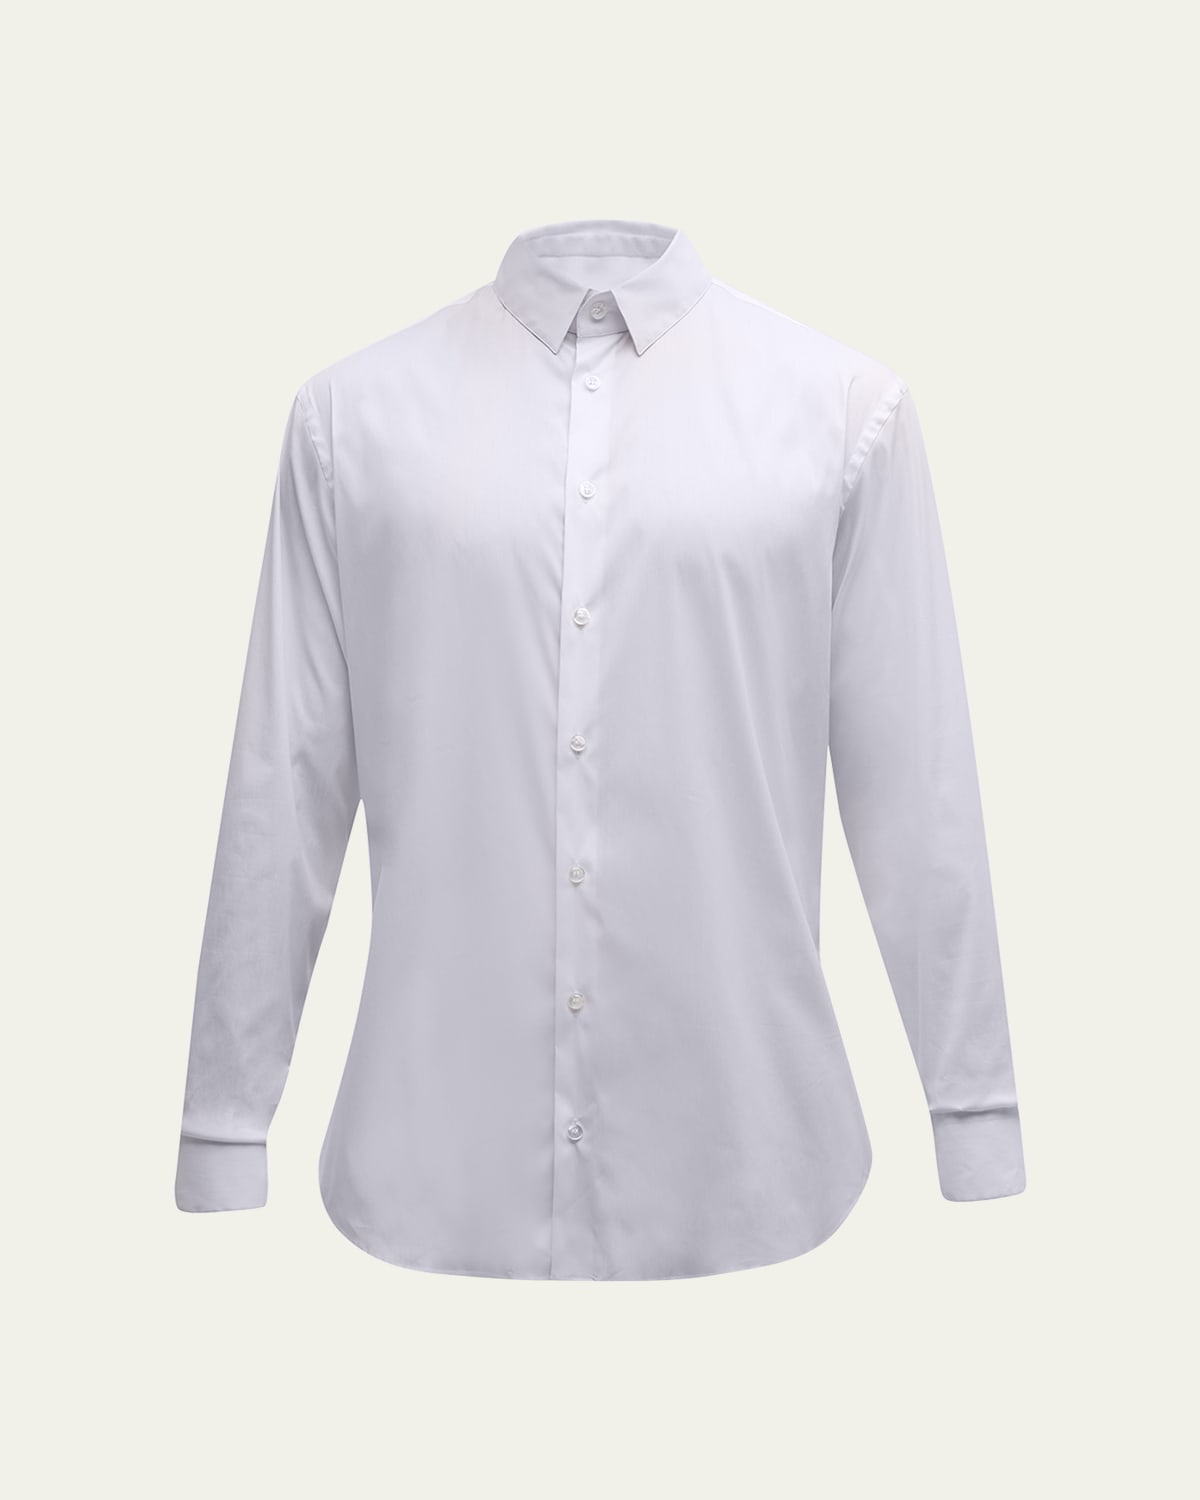 Giorgio Armani Men's Stretch Poplin Sport Shirt In Solid White